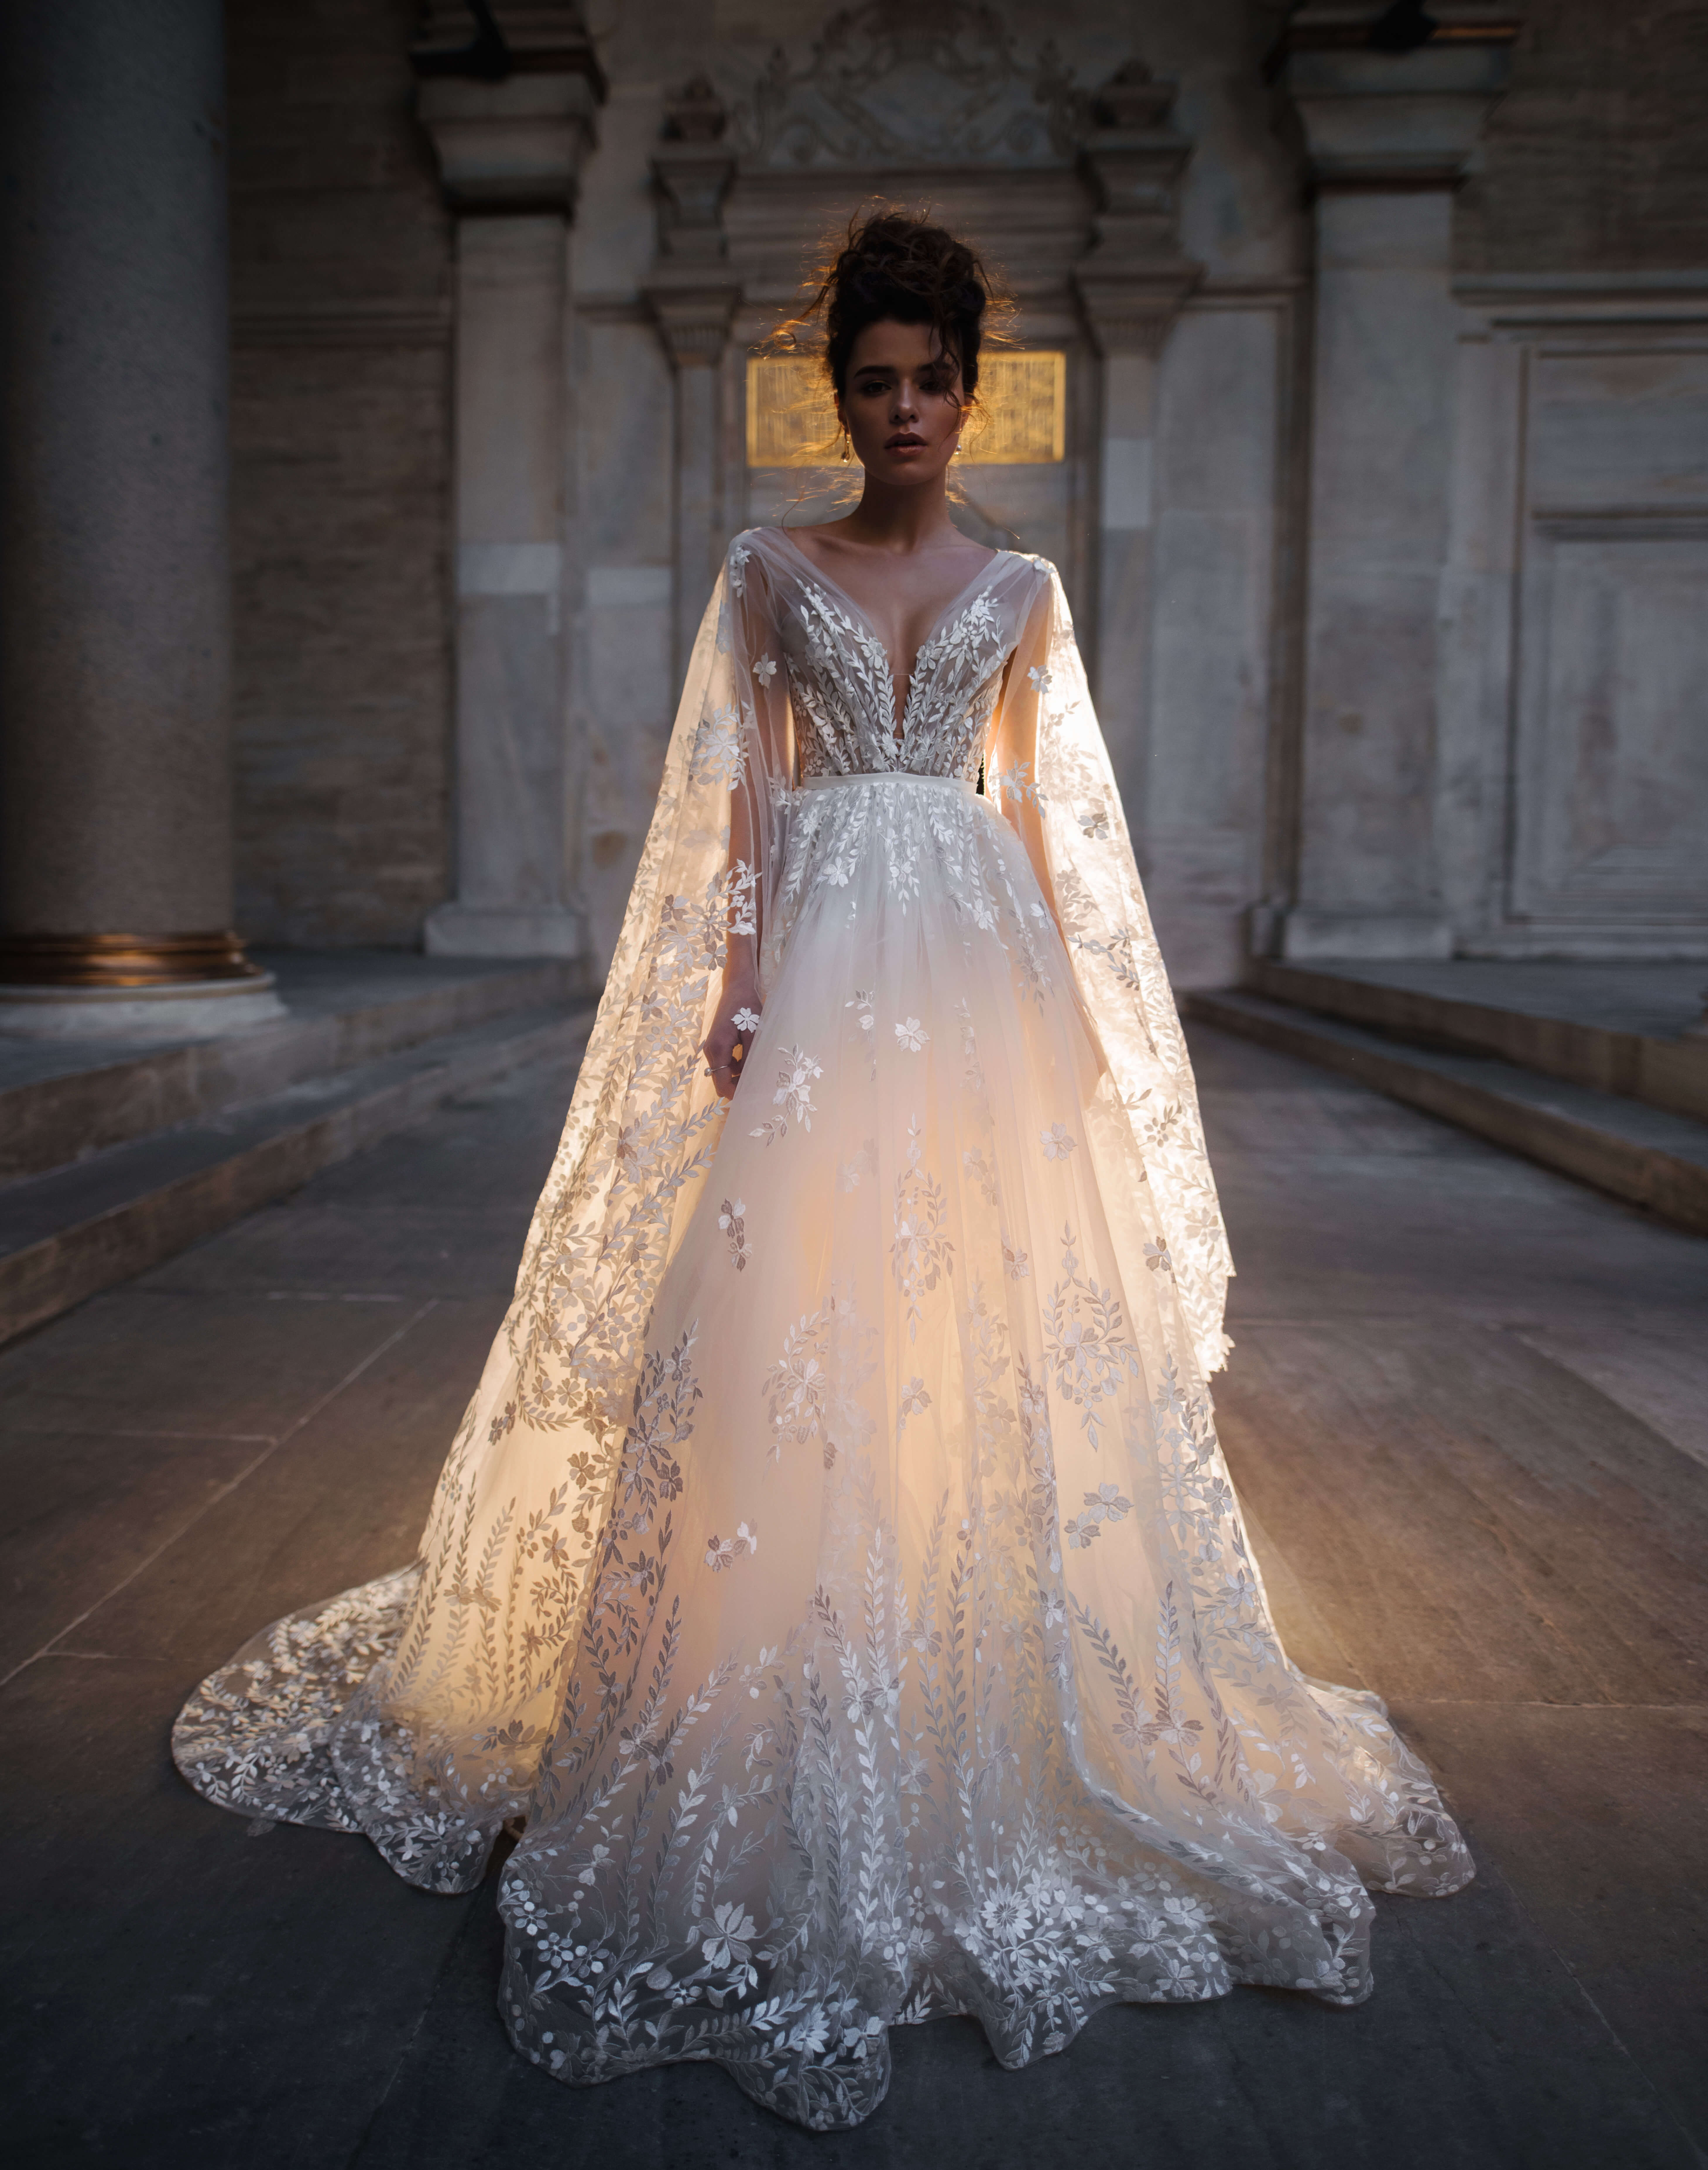 Купить свадебное платье «Нилса» Бламмо Биамо из коллекции 2018 года в Нижнем Новгороде